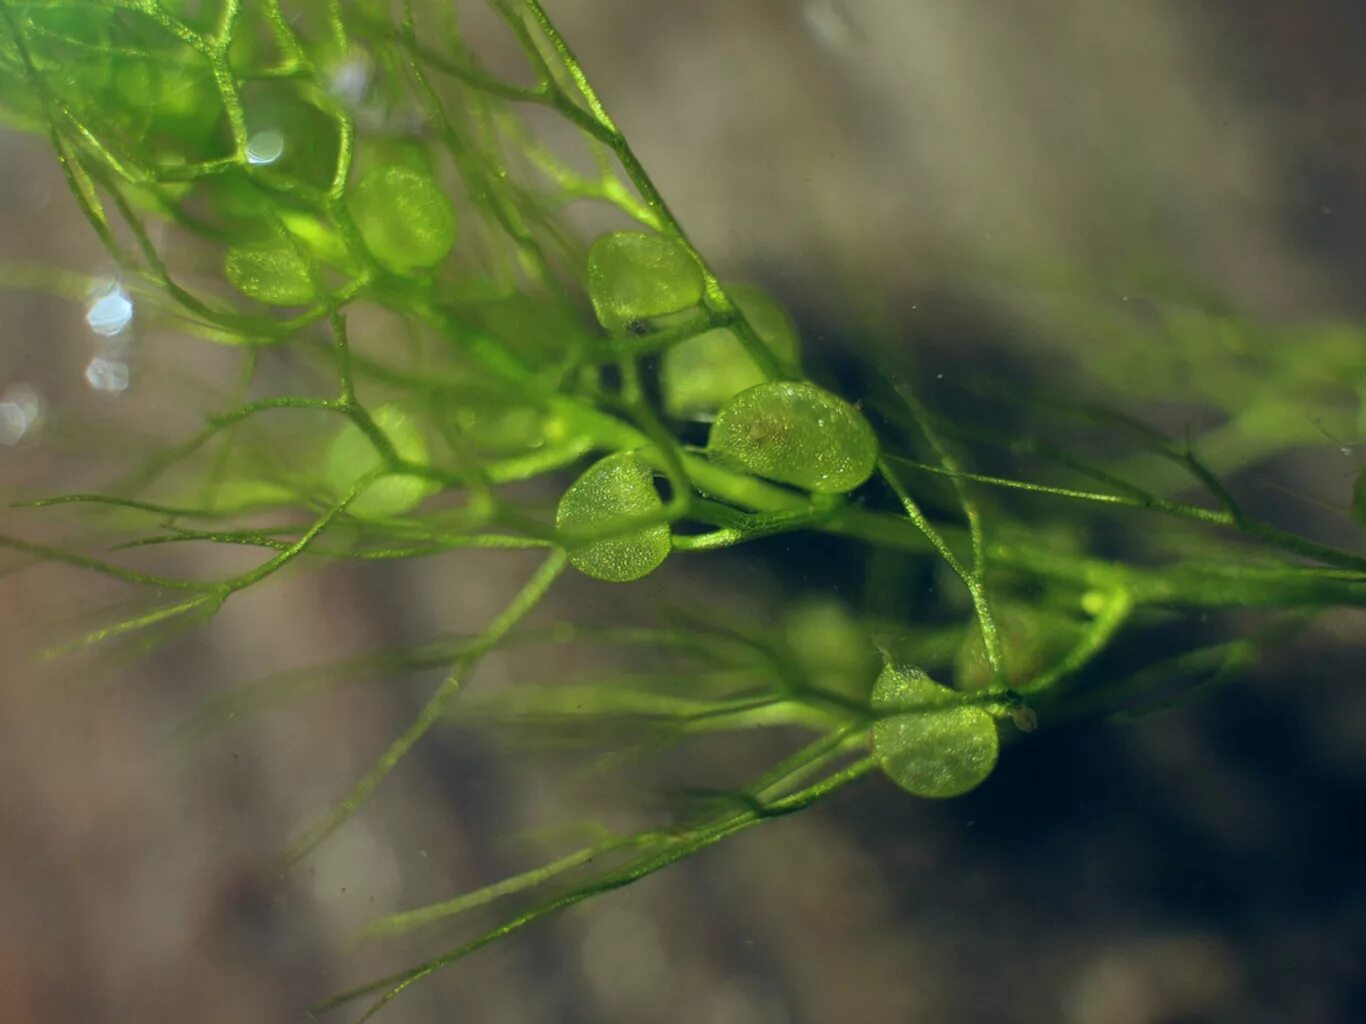 Водные растения пузырьки. Пузырчатка (Utricularia). Пузырчатка растение хищник. Пузырчатка необыкновенная. Utricularia vulgaris l. – пузырчатка обыкновенная.